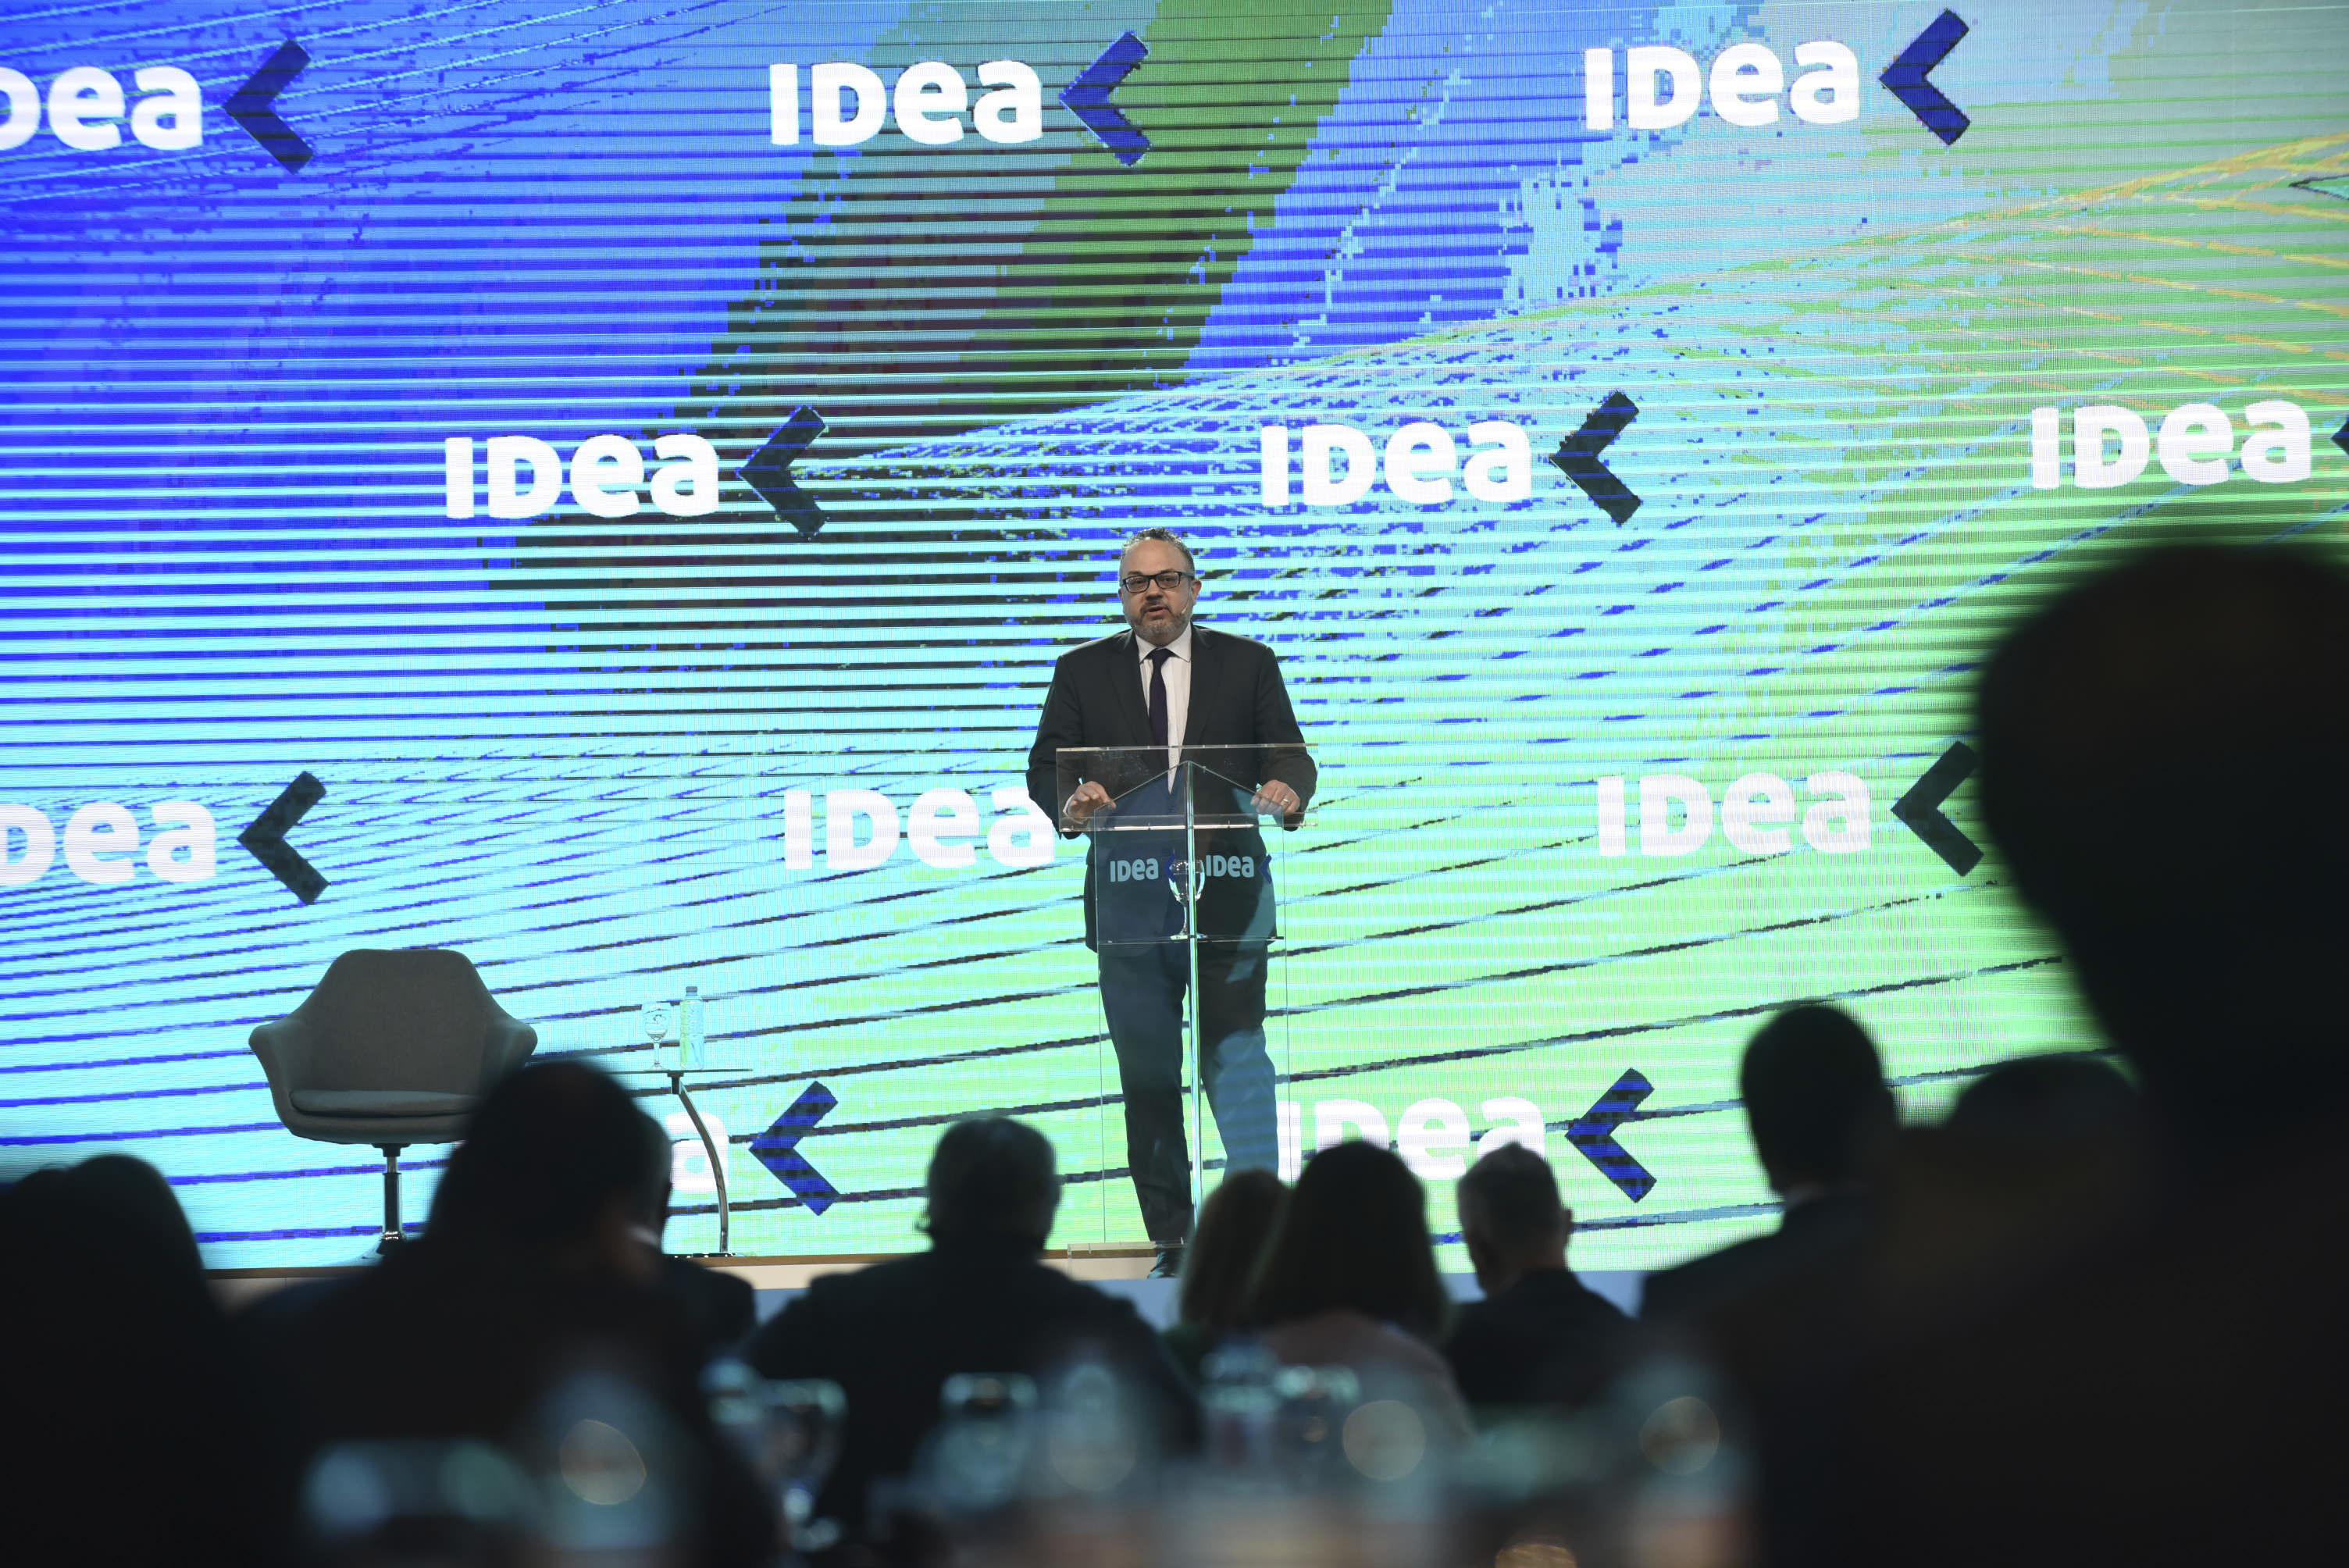 El ministro de Desarrollo Productivo, Matías Kulfas, evitó referirse al congelamiento de precios durante su exposición. (Foto: Coloquio de IDEA).